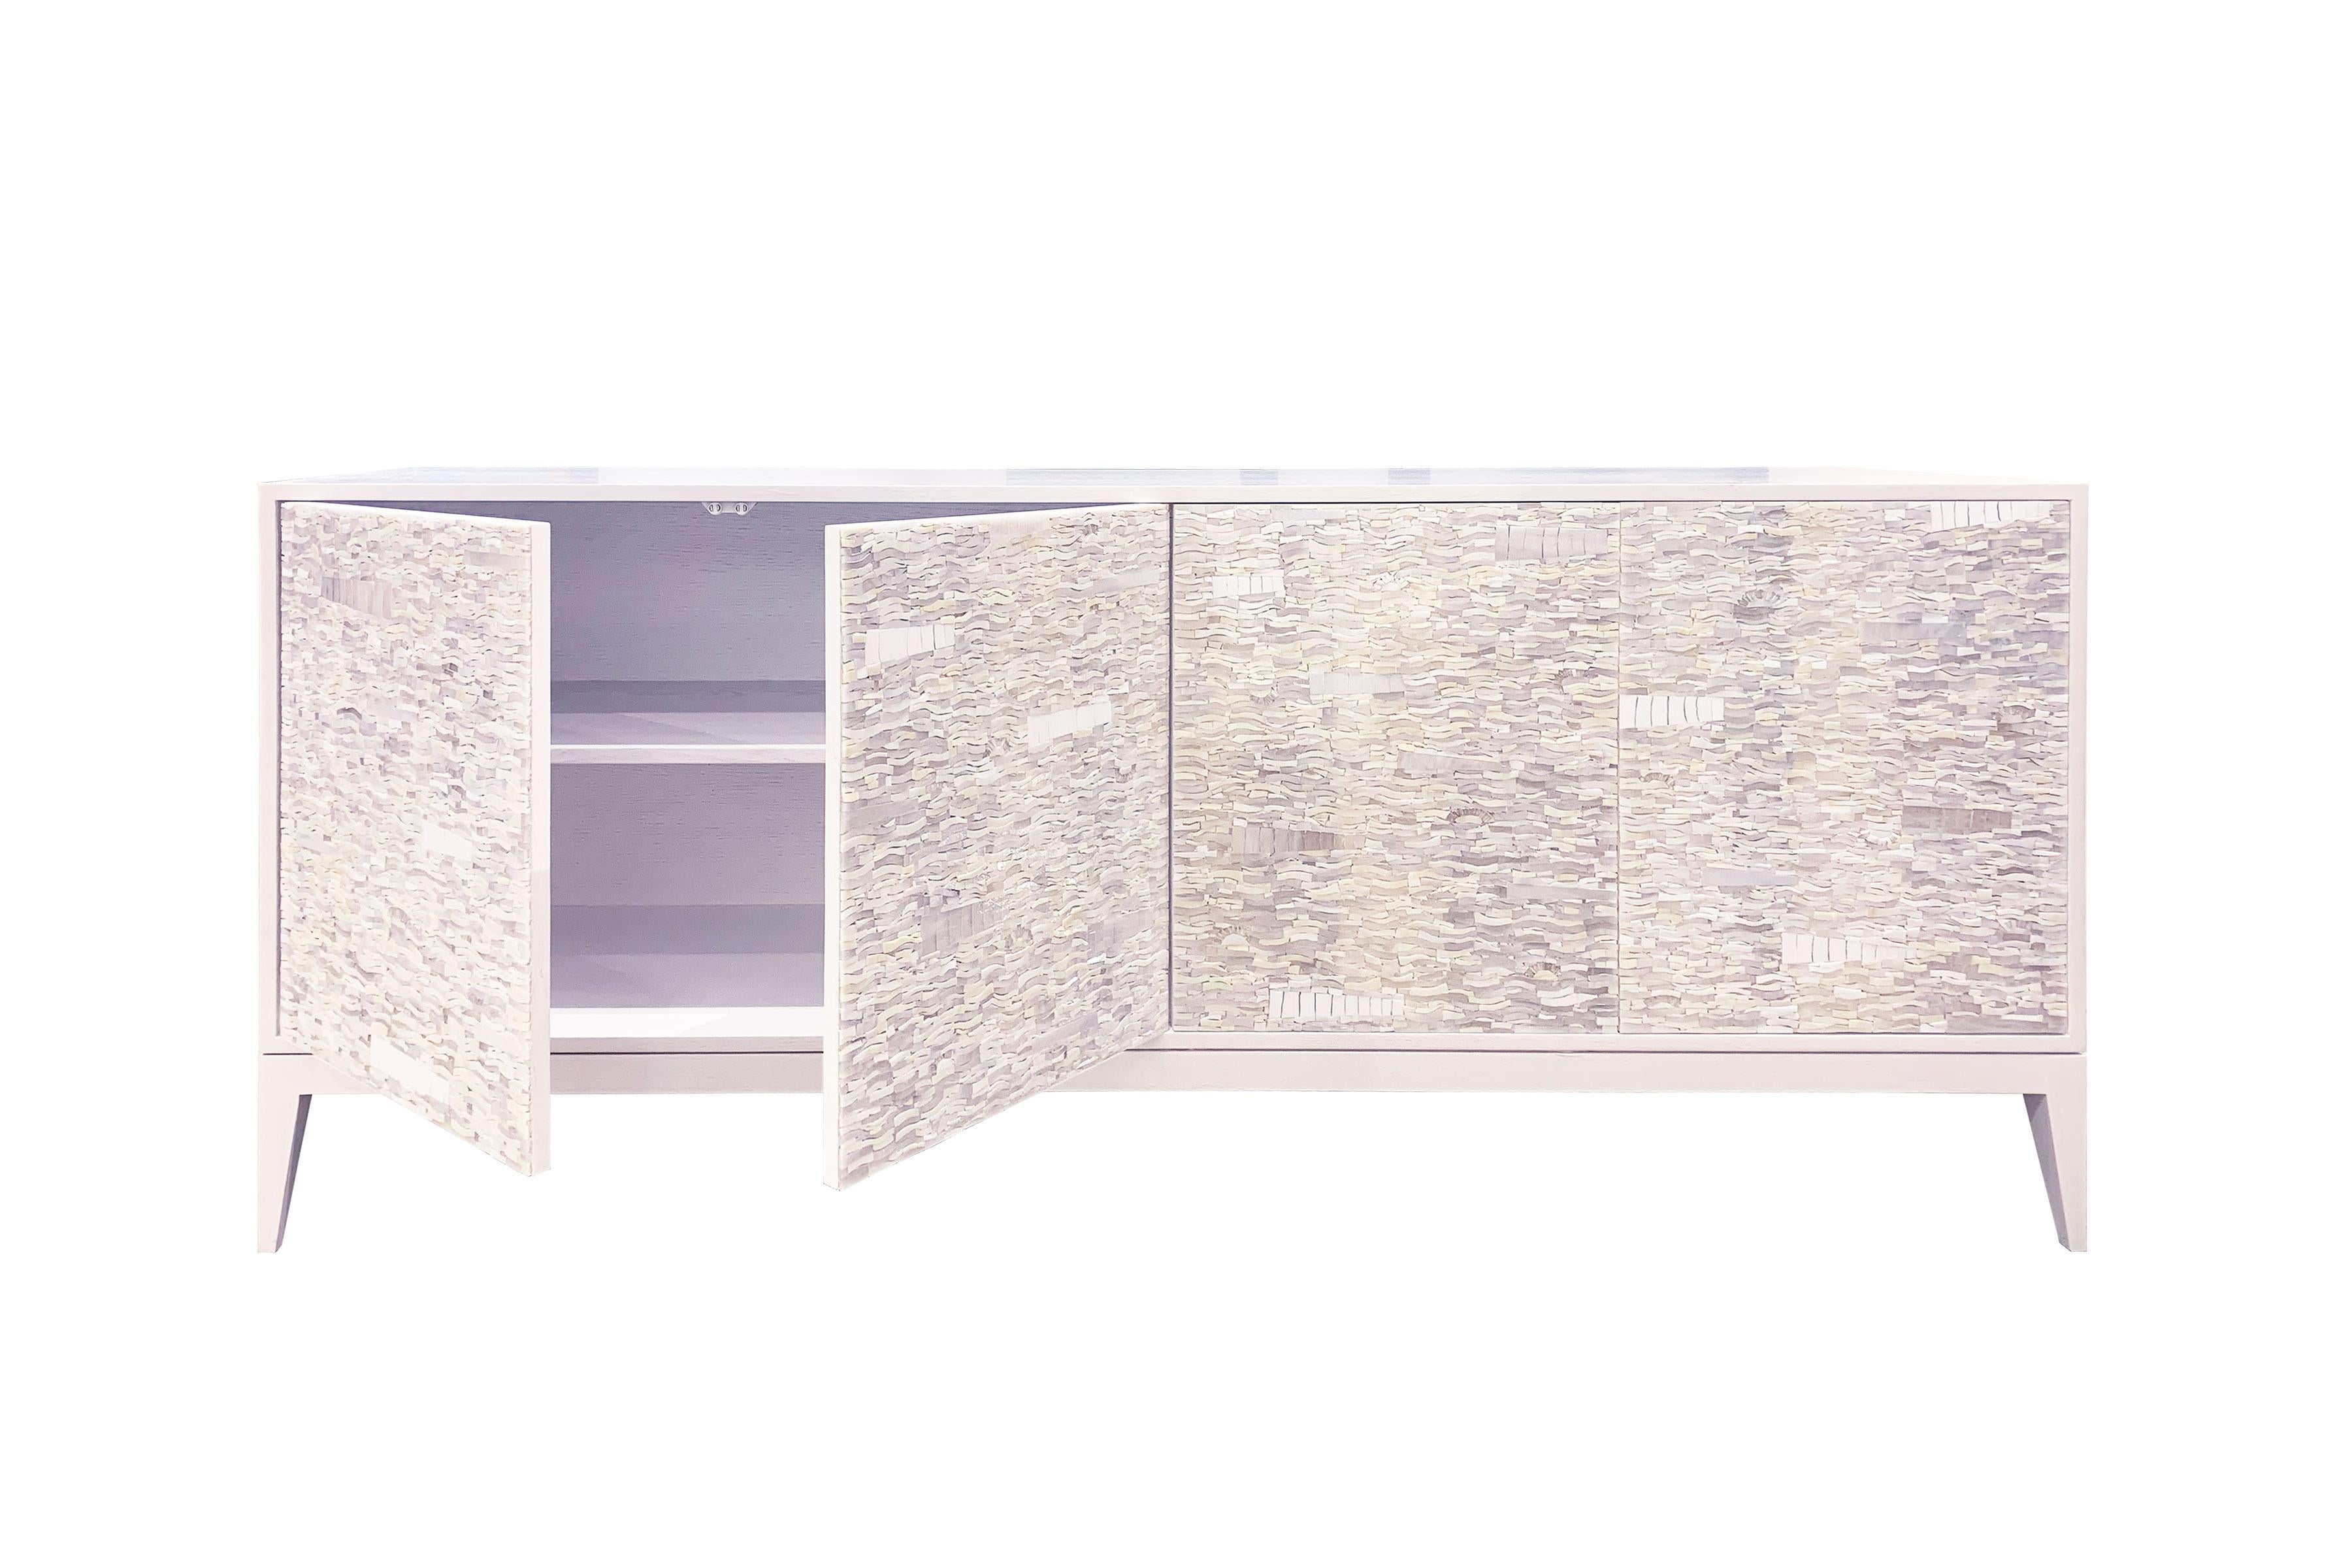 Der Schrank Ravenna von Ercole Home hat eine 4-türige Front und ist aus weiß lackiertem Eichenholz. 
Handgeschliffenes Glasmosaik in verschiedenen Weiß- und Elfenbeintönen verziert die Oberfläche im Ravenna-Mosaikmuster.
Jedes Fach verfügt über